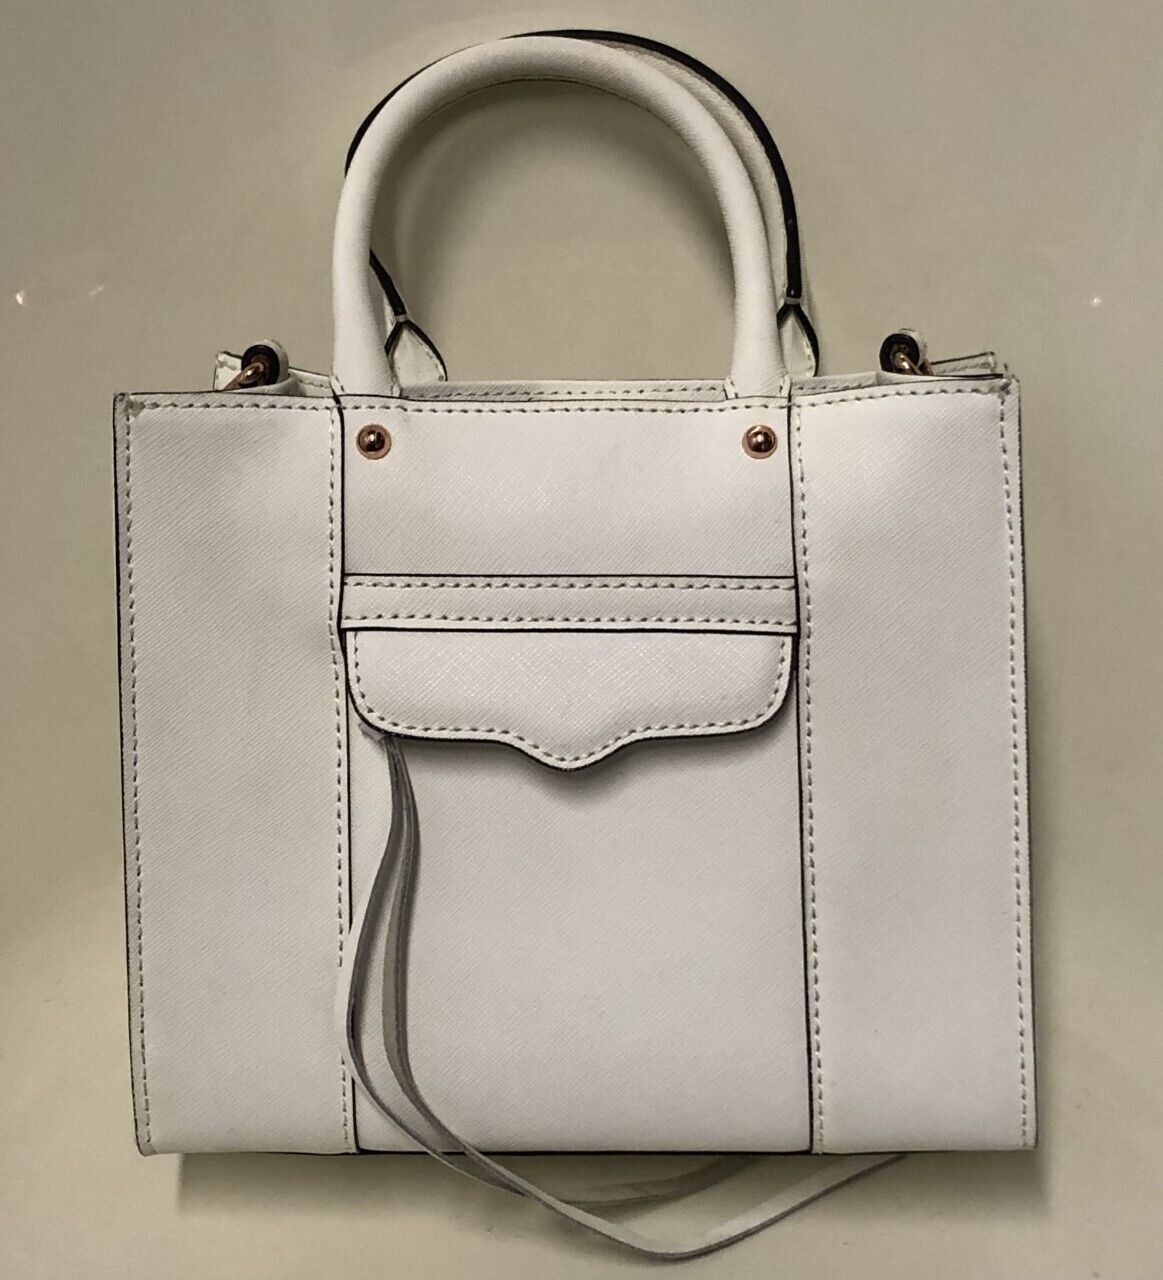 Rebecca Minkoff MAB White Saffiano Leather Mini CrossBody Tote Bag with strap | eBay AU